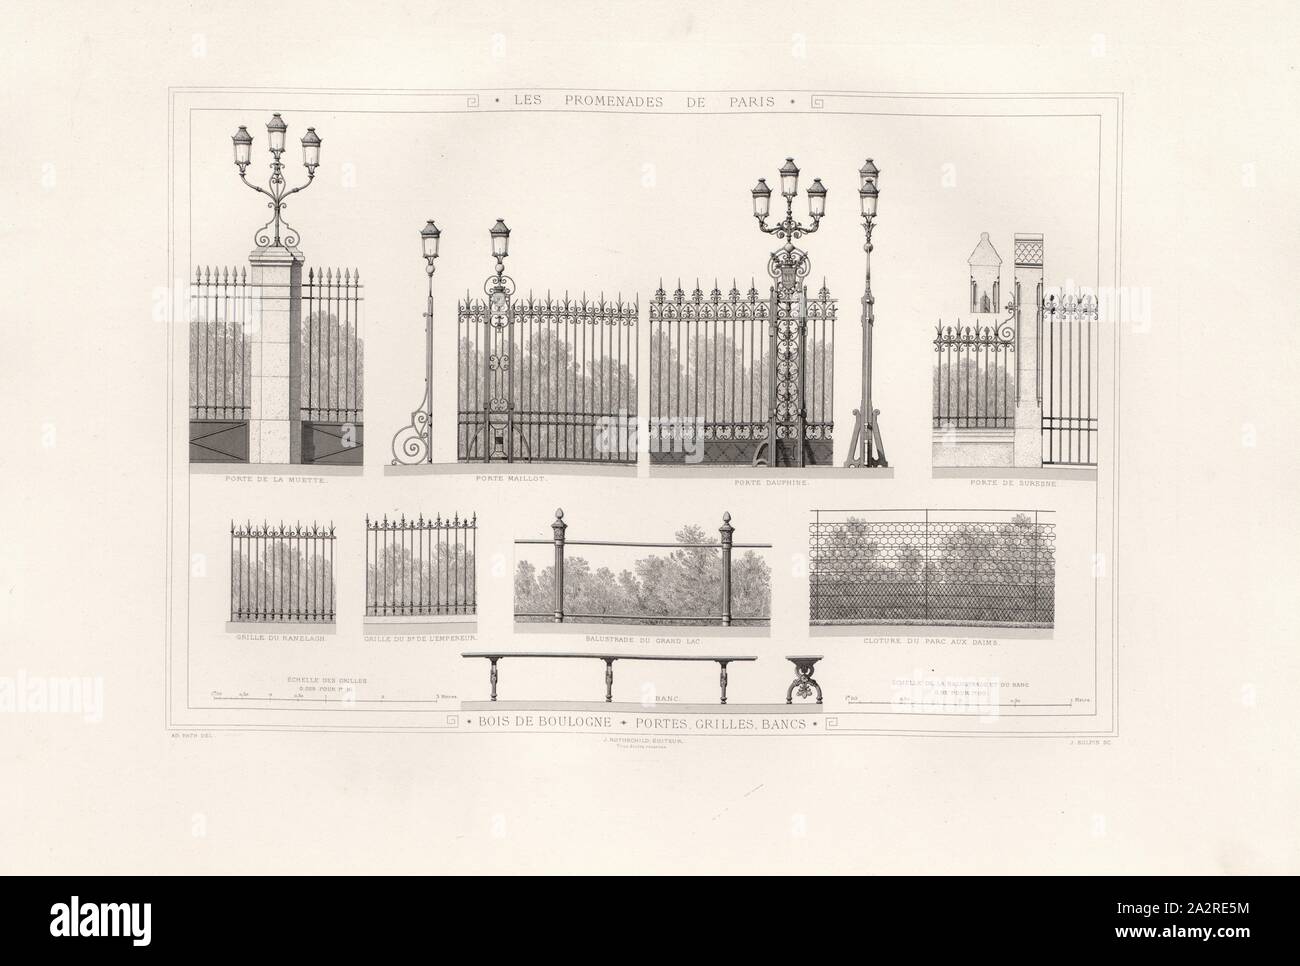 Bois de Boulogne, Türen grids Bänke, Abbildung der Bänke, Eingängen und Gitter des 19. Jahrhunderts Boulogne Park, unterzeichnet; Ad., Fath Del, J. Rotschild, ÉDITEURS; J. Sulpis Sc, Abb. 4, S. 27, Fath, Ad. (Del.); Rotschild, J.(Hrsg.); Sulpis, J. (Sc), Adolphe Alphand: Les Promenaden de Paris [...]. Planches. Paris: par J. Rothschild, 1867 Stockfoto